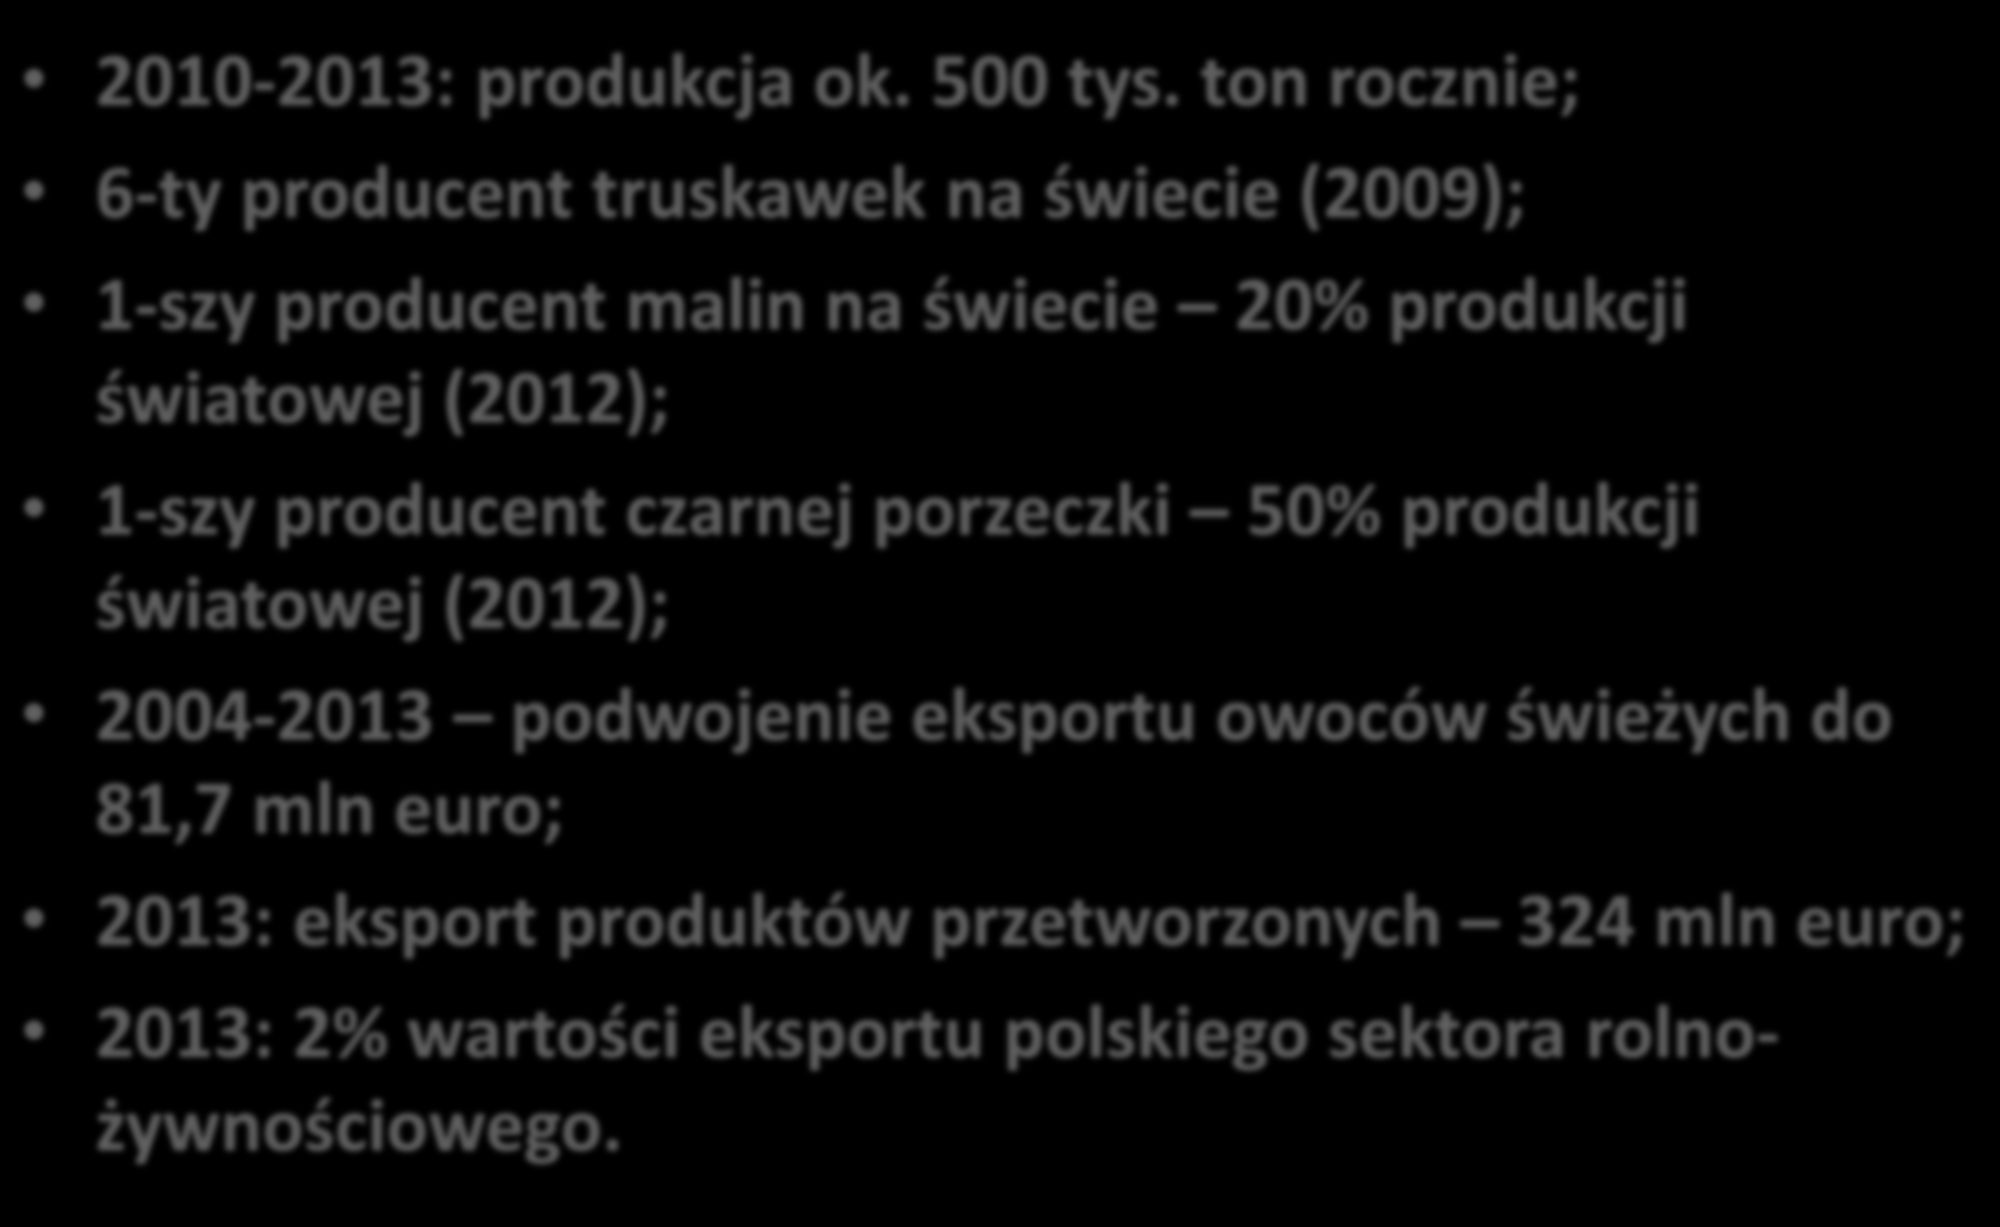 Klaster owoców jagodowych przesłanki wyboru 2010-2013: produkcja ok. 500 tys.